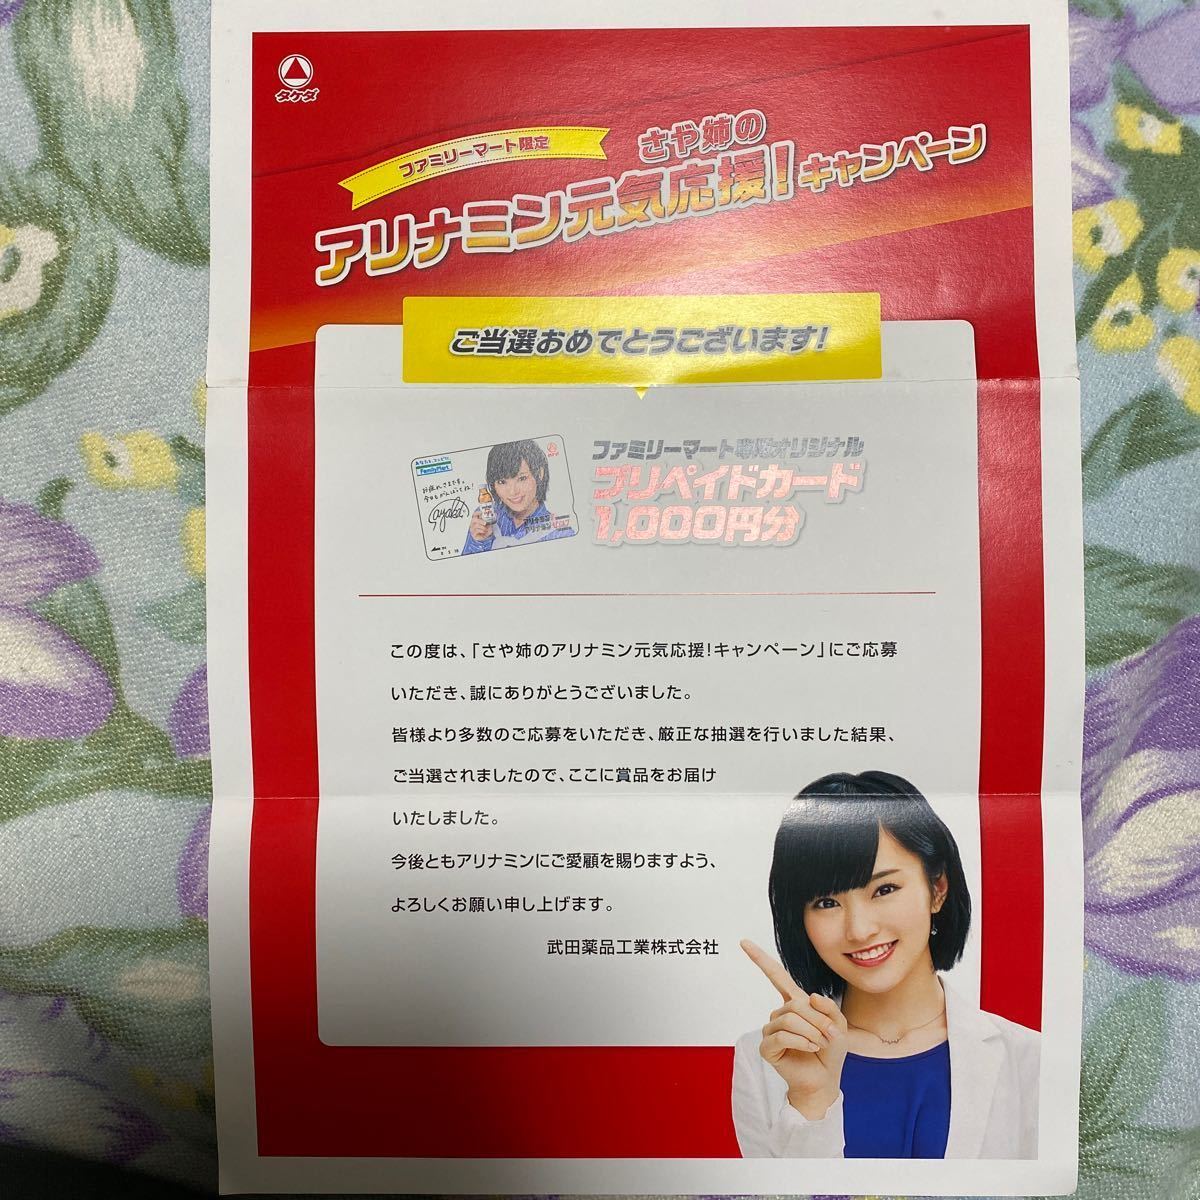  Family mart карта предоплаты избранные товары изначальный NMB48 Yamamoto Sayaka 